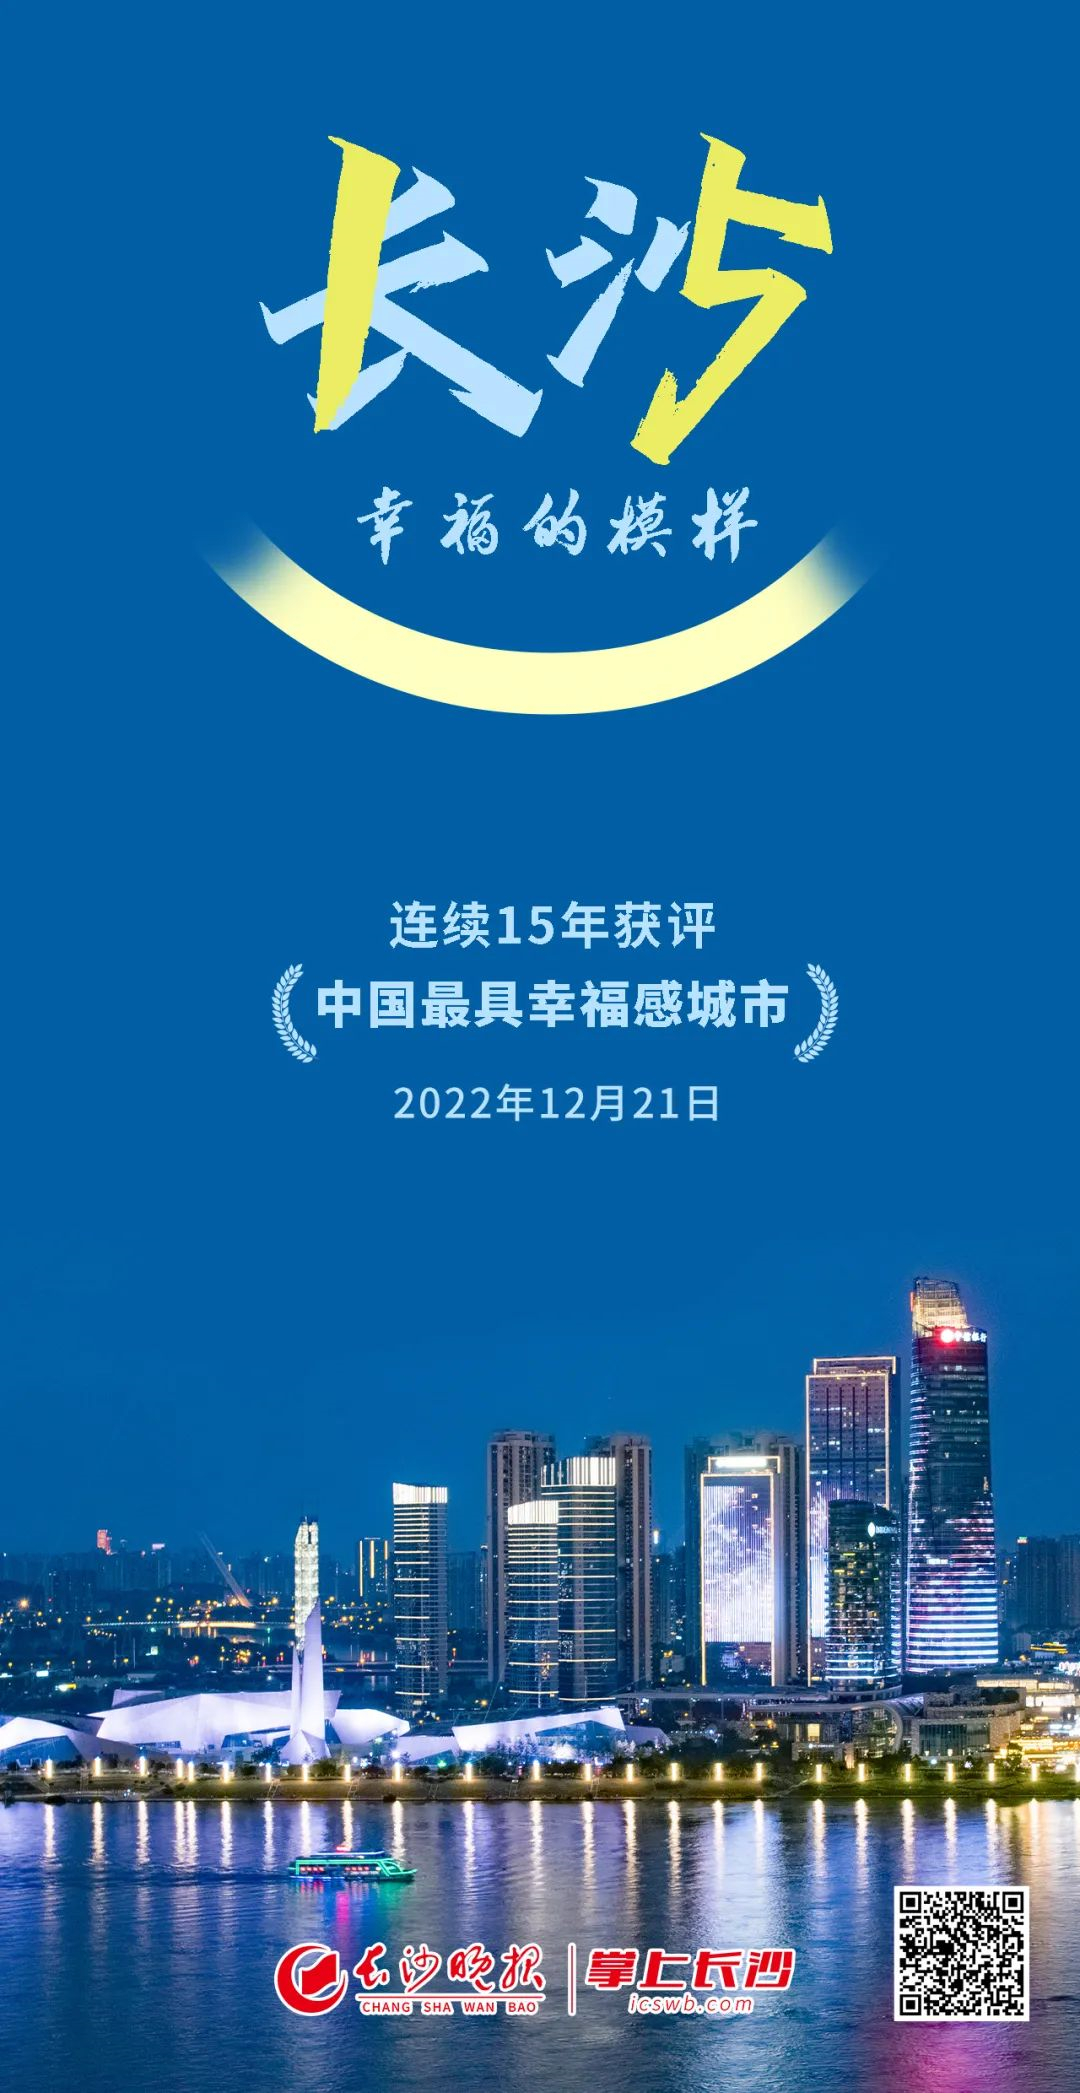 “2019中国最具幸福感城市”即将揭晓榜单